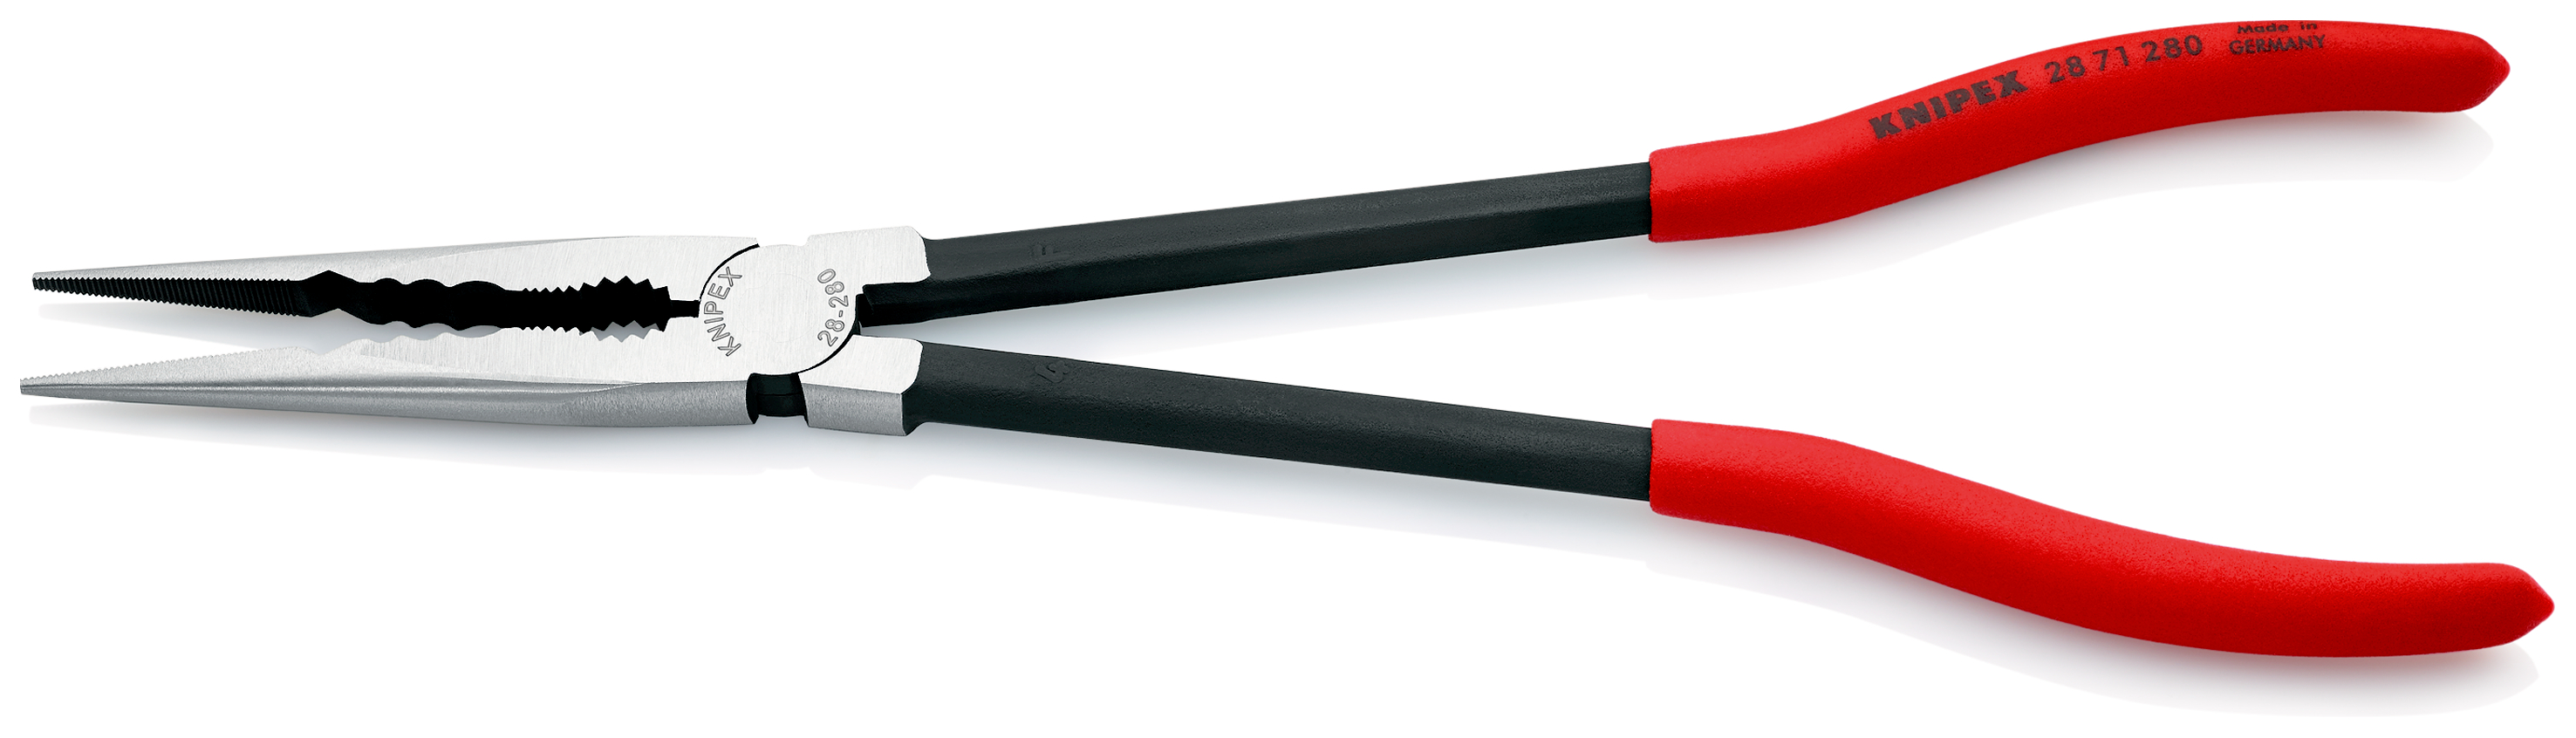 KNIPEX Montierzange mit Querprofilen mit Kunststoff überzogen schwarz atramentiert 280 mm